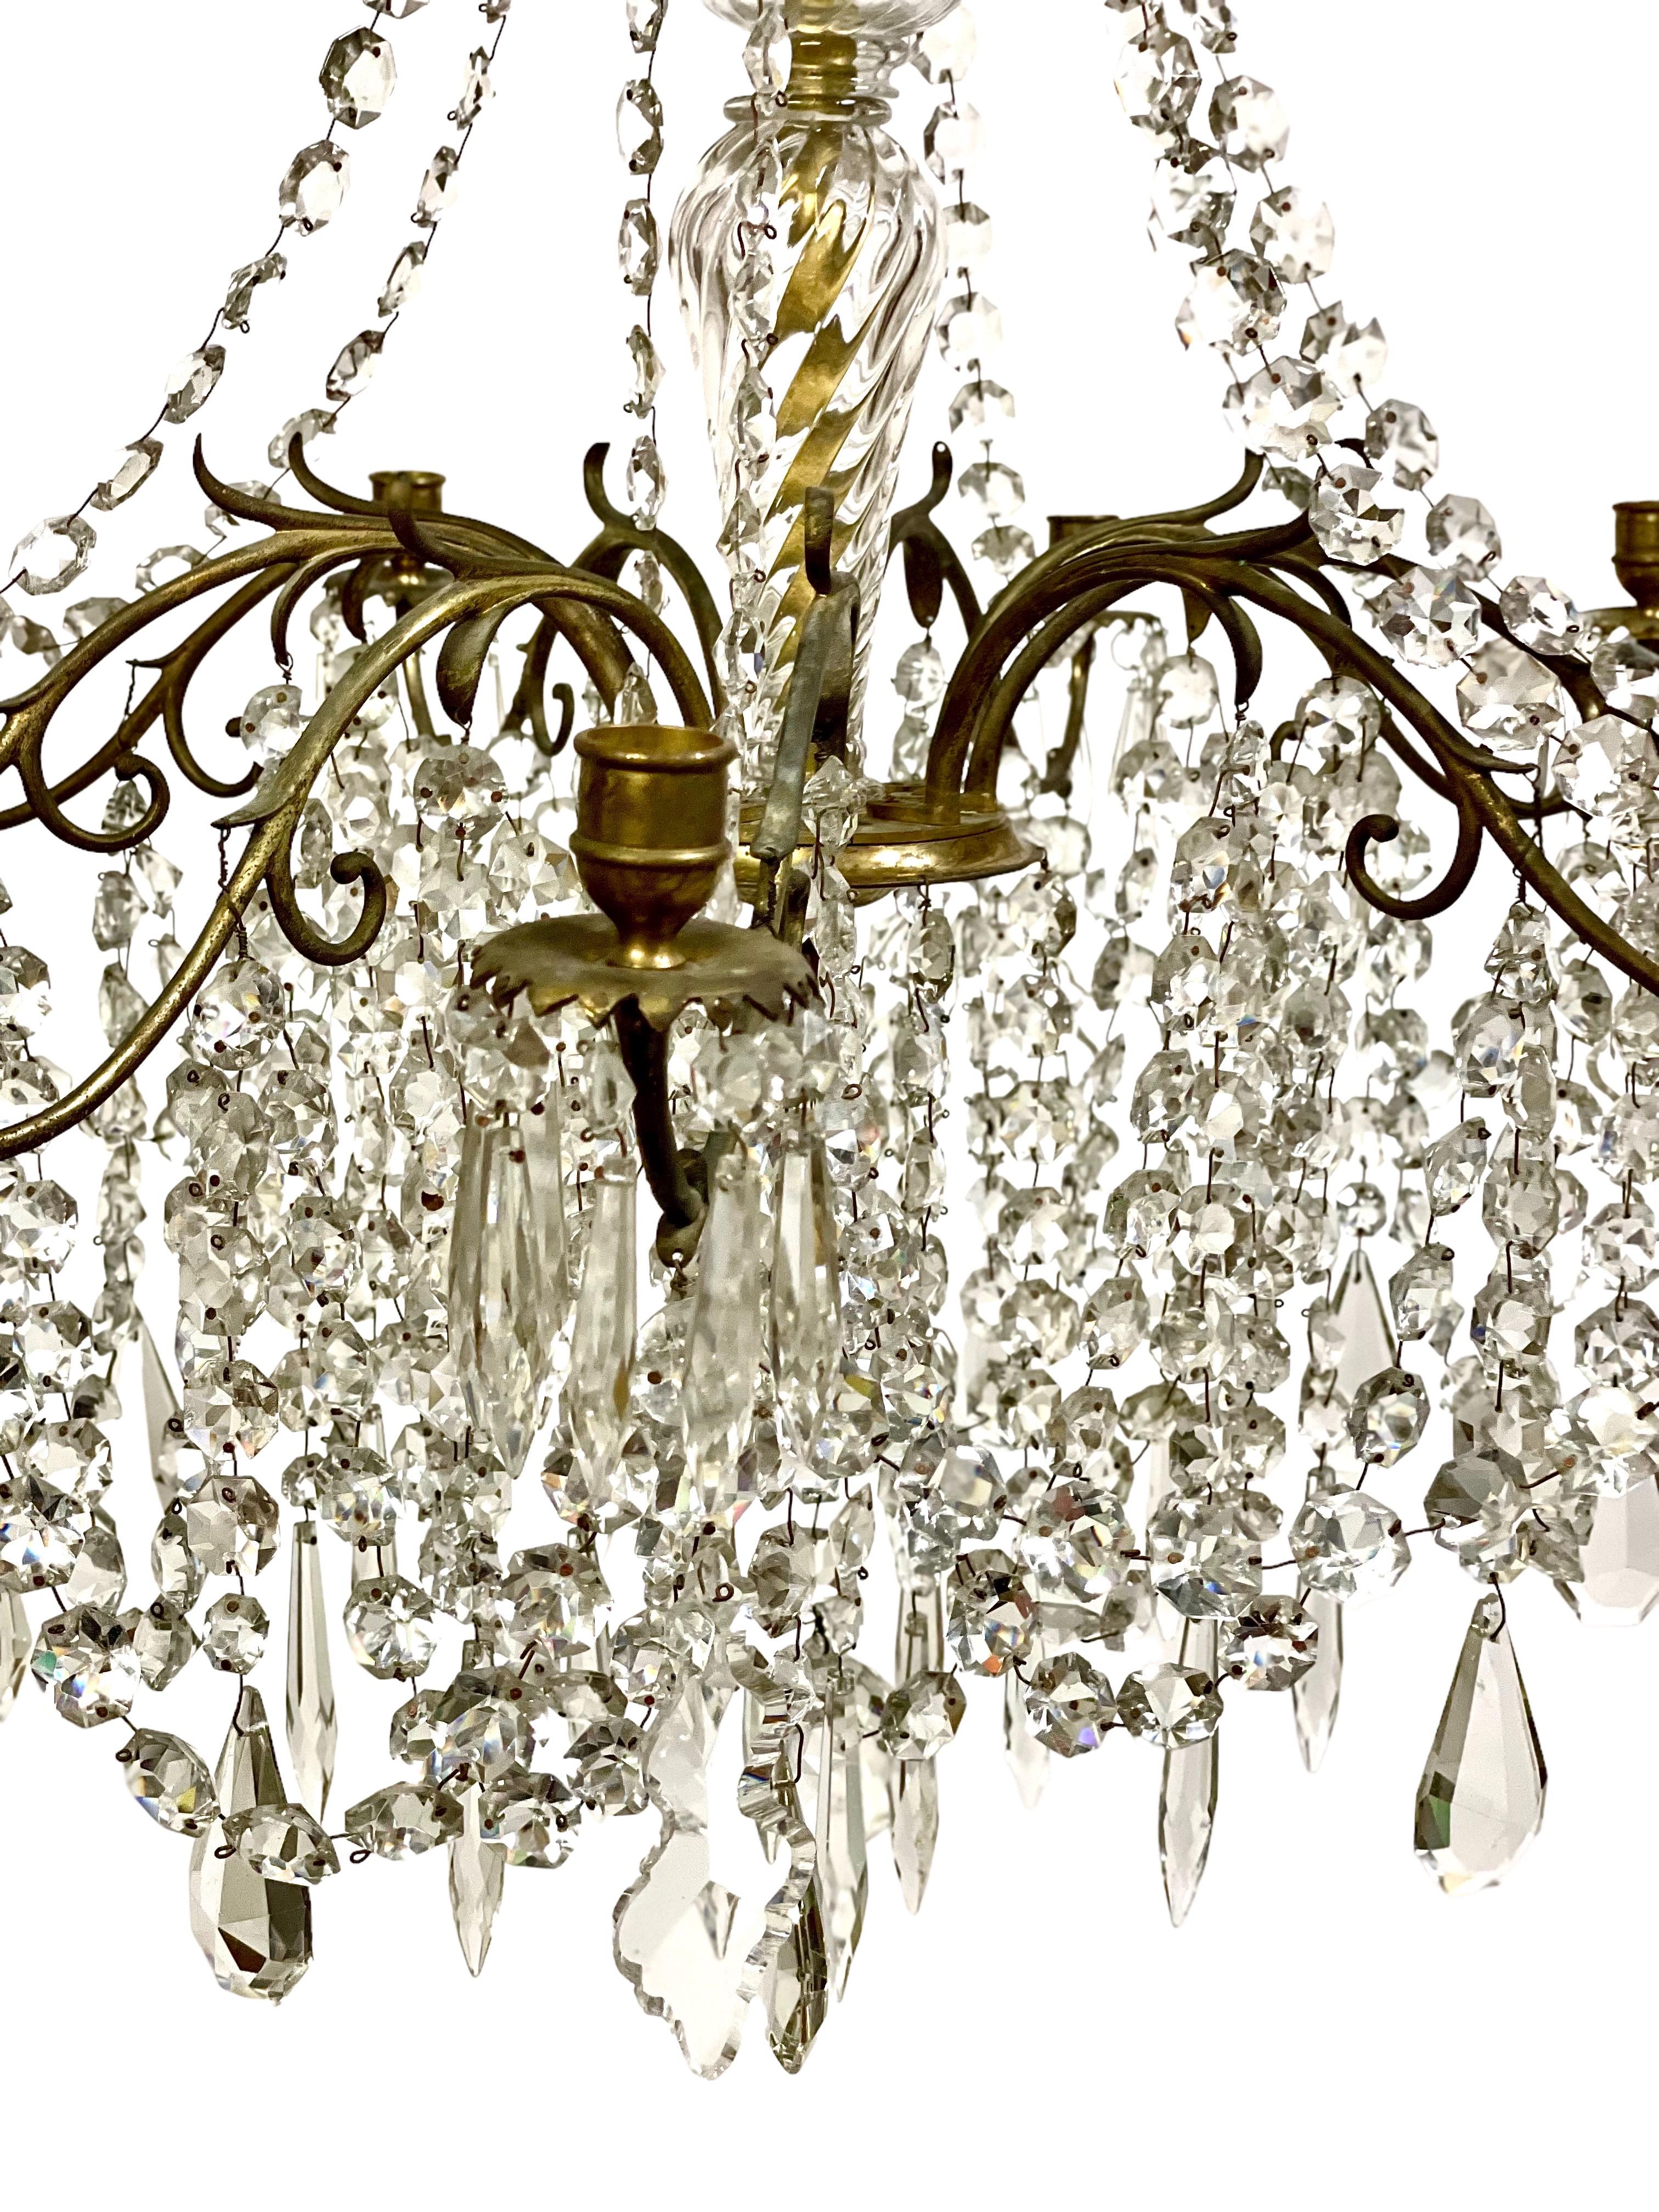 Un fabuleux lustre traditionnel de neuf lumières en laiton doré, bronze et cristal taillé, datant de la seconde moitié du XIXe siècle. Cette pièce exceptionnelle est richement décorée de chaînes en cristal et de pendentifs scintillants qui